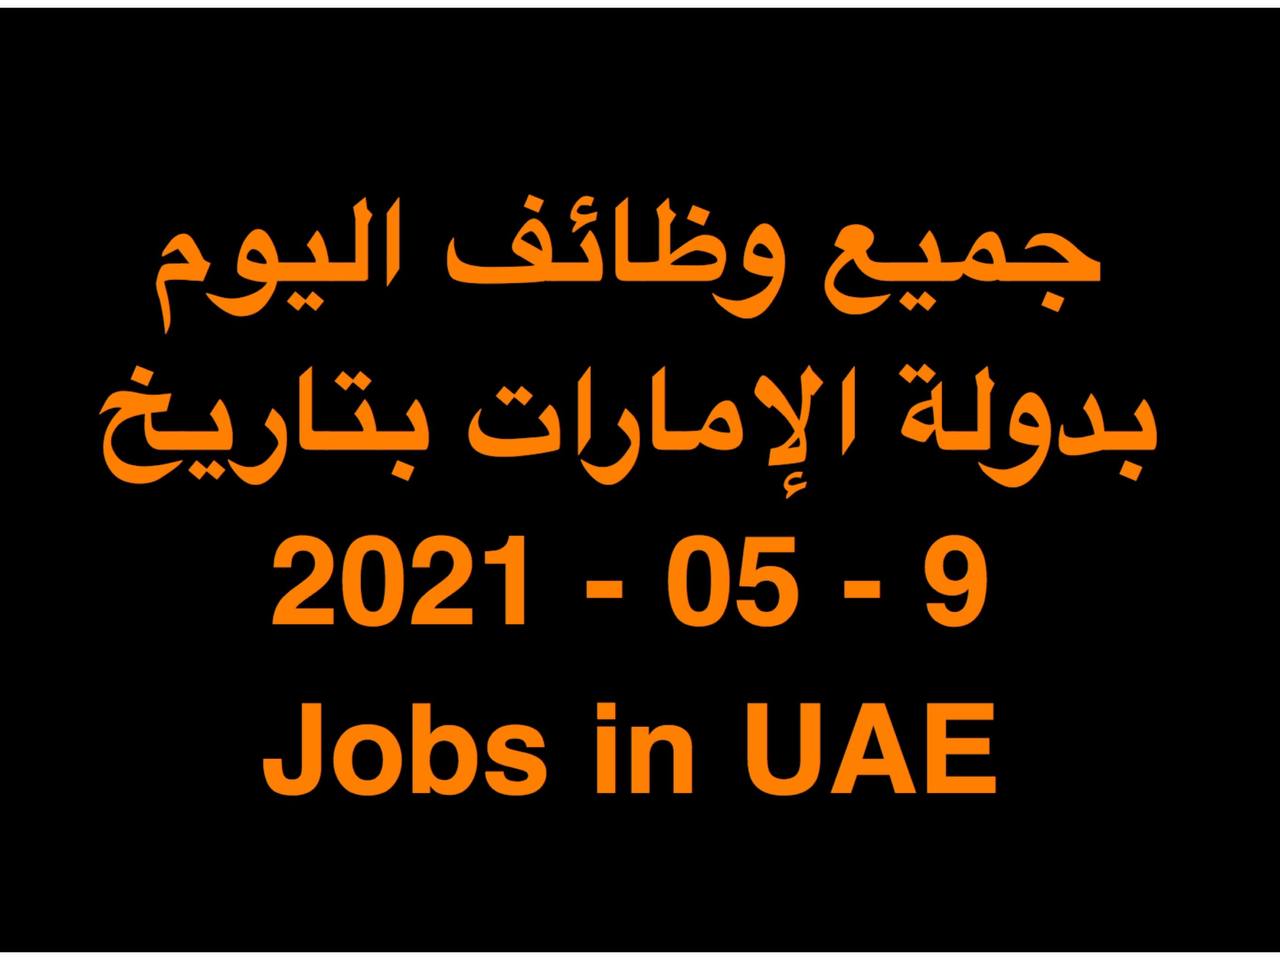 وظائف في الإمارات | JOBS IN UAE     وظائف مايو 2021 خالية وفرص عمل بالامارات وحصل على وظيفة الان في الامارات اليوم ( 9 مايو 2021 ) لجميع التخصصات يومي في دولة الامارات للمواطنين والمقيمين بالامارات بتاريخ 9-05-2021 الوظائف المعلنة في الشركات والمؤسسات والقطاعات الحكومية والخاصة بدولة الامارات بتاريخ (9 مايو 2021 ) لكلٍ من المواطنين والمقيمين بدولة الامارات .